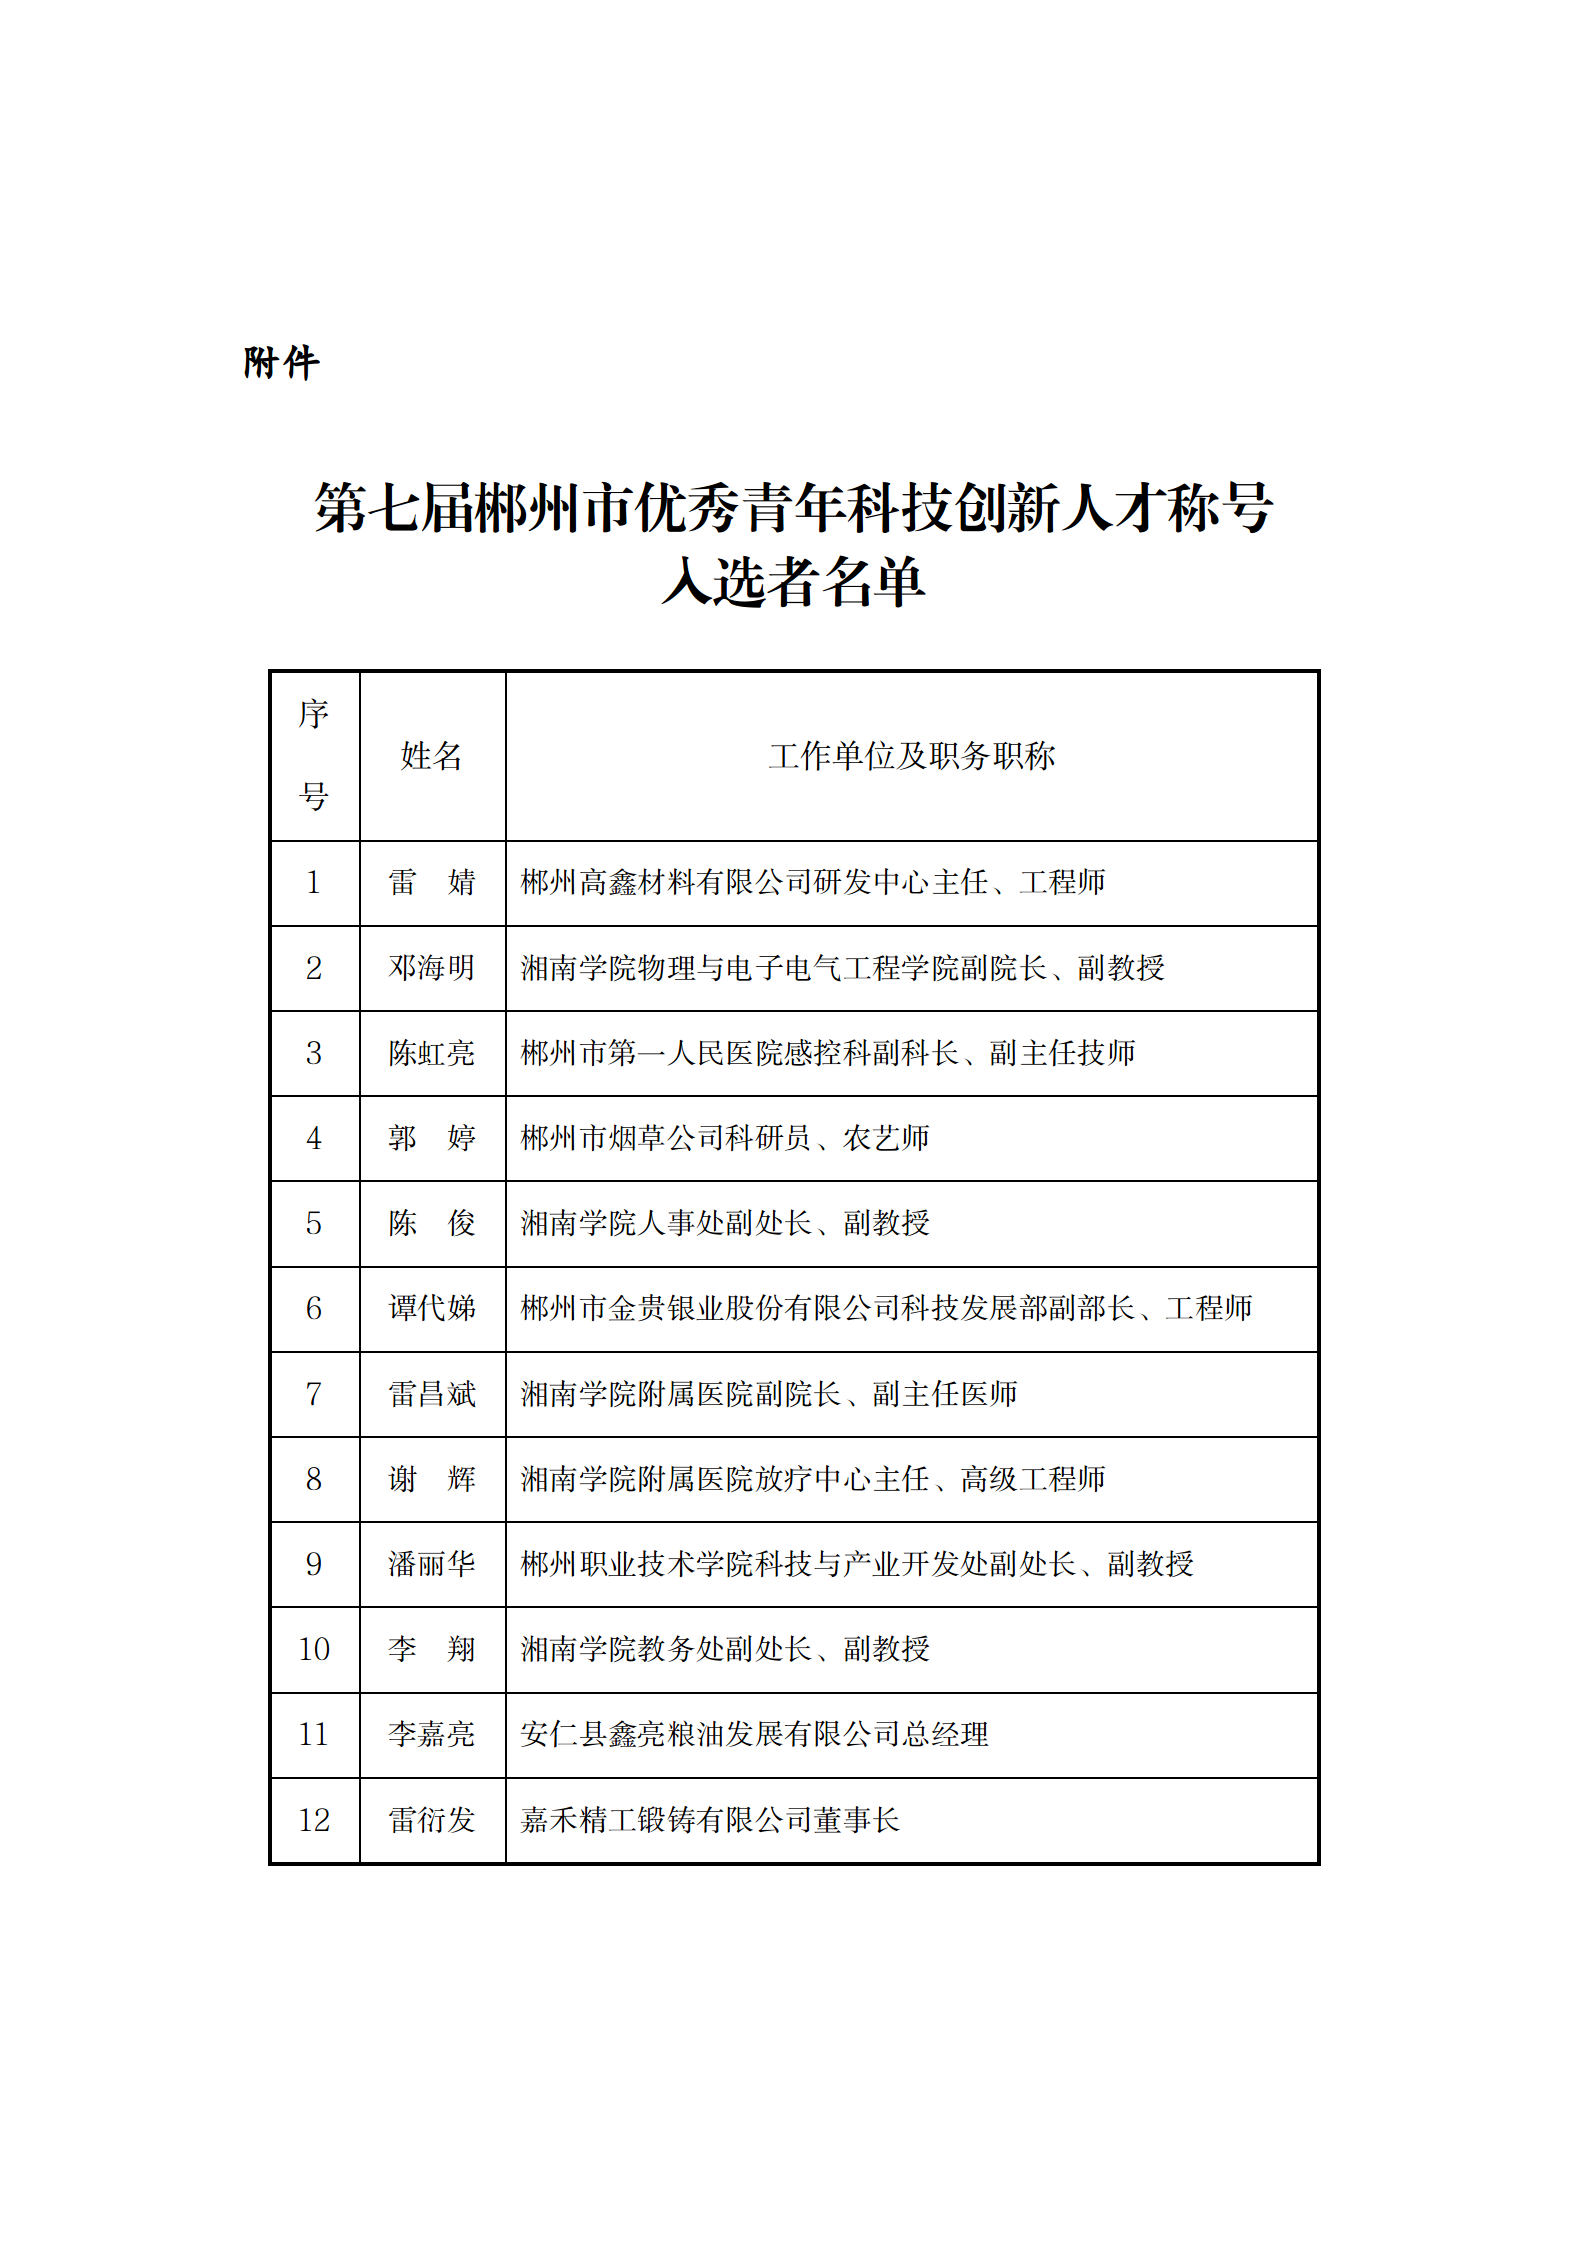 第七届郴州市优秀青年科技创新人才推荐评选结果公示_02.png